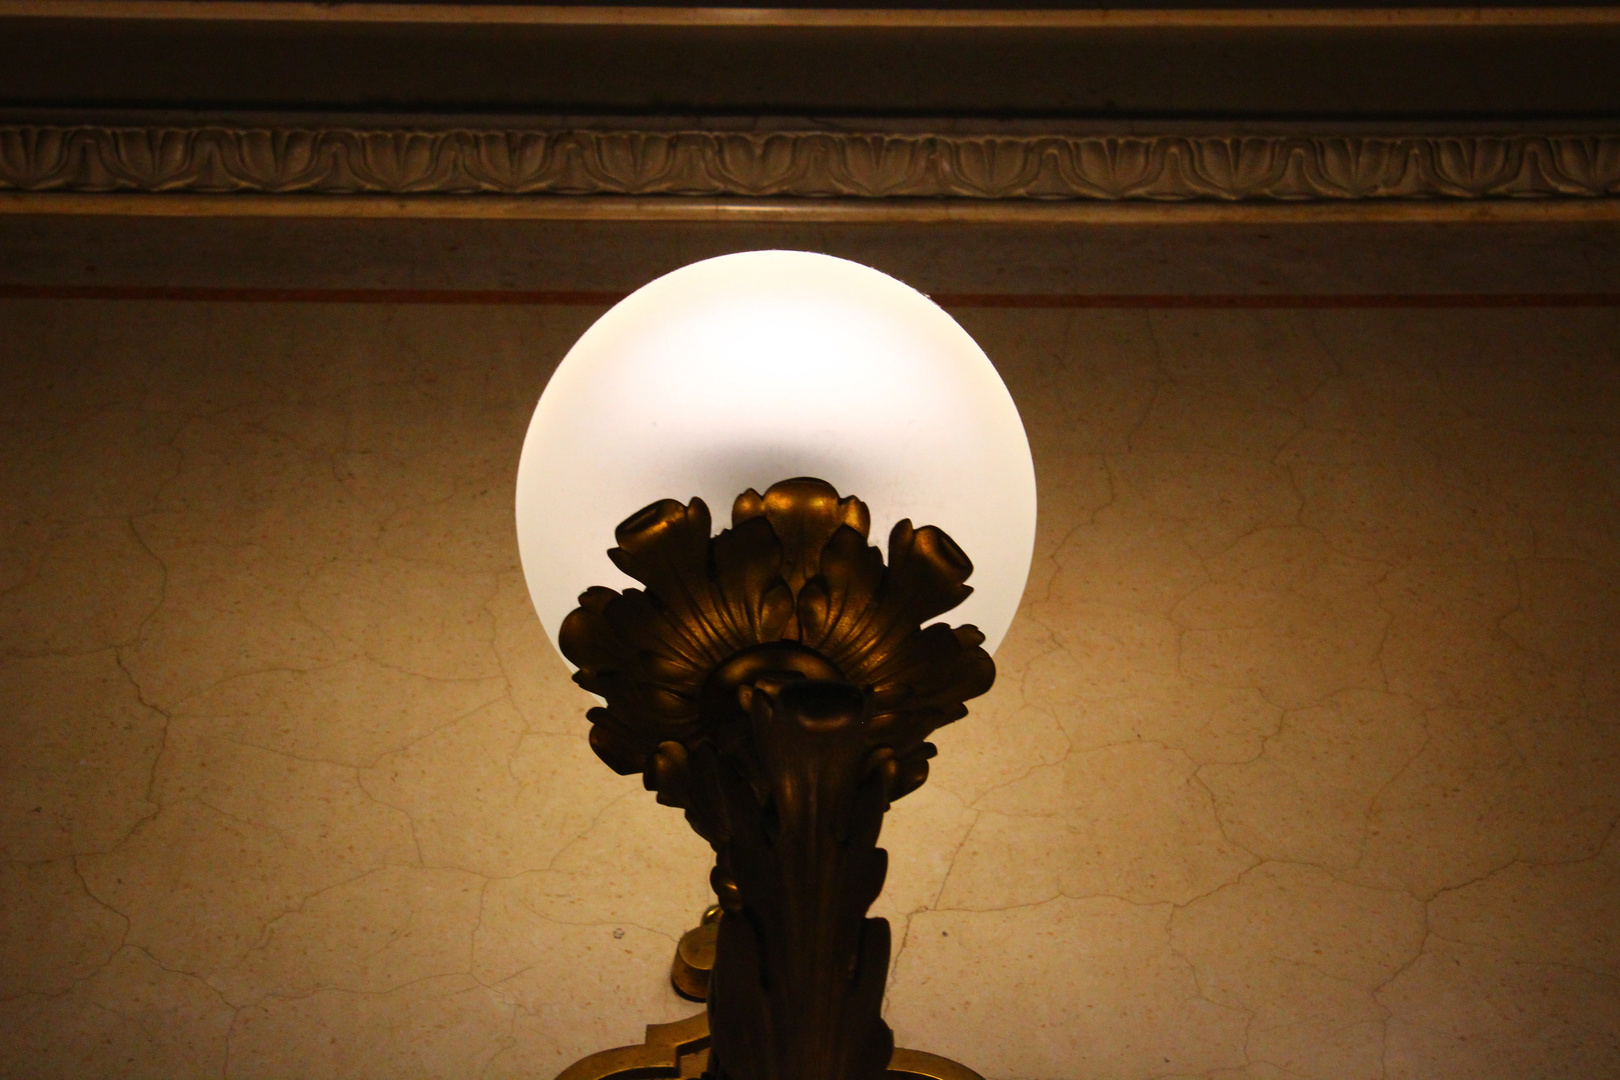 Lampe im Burgtheater II